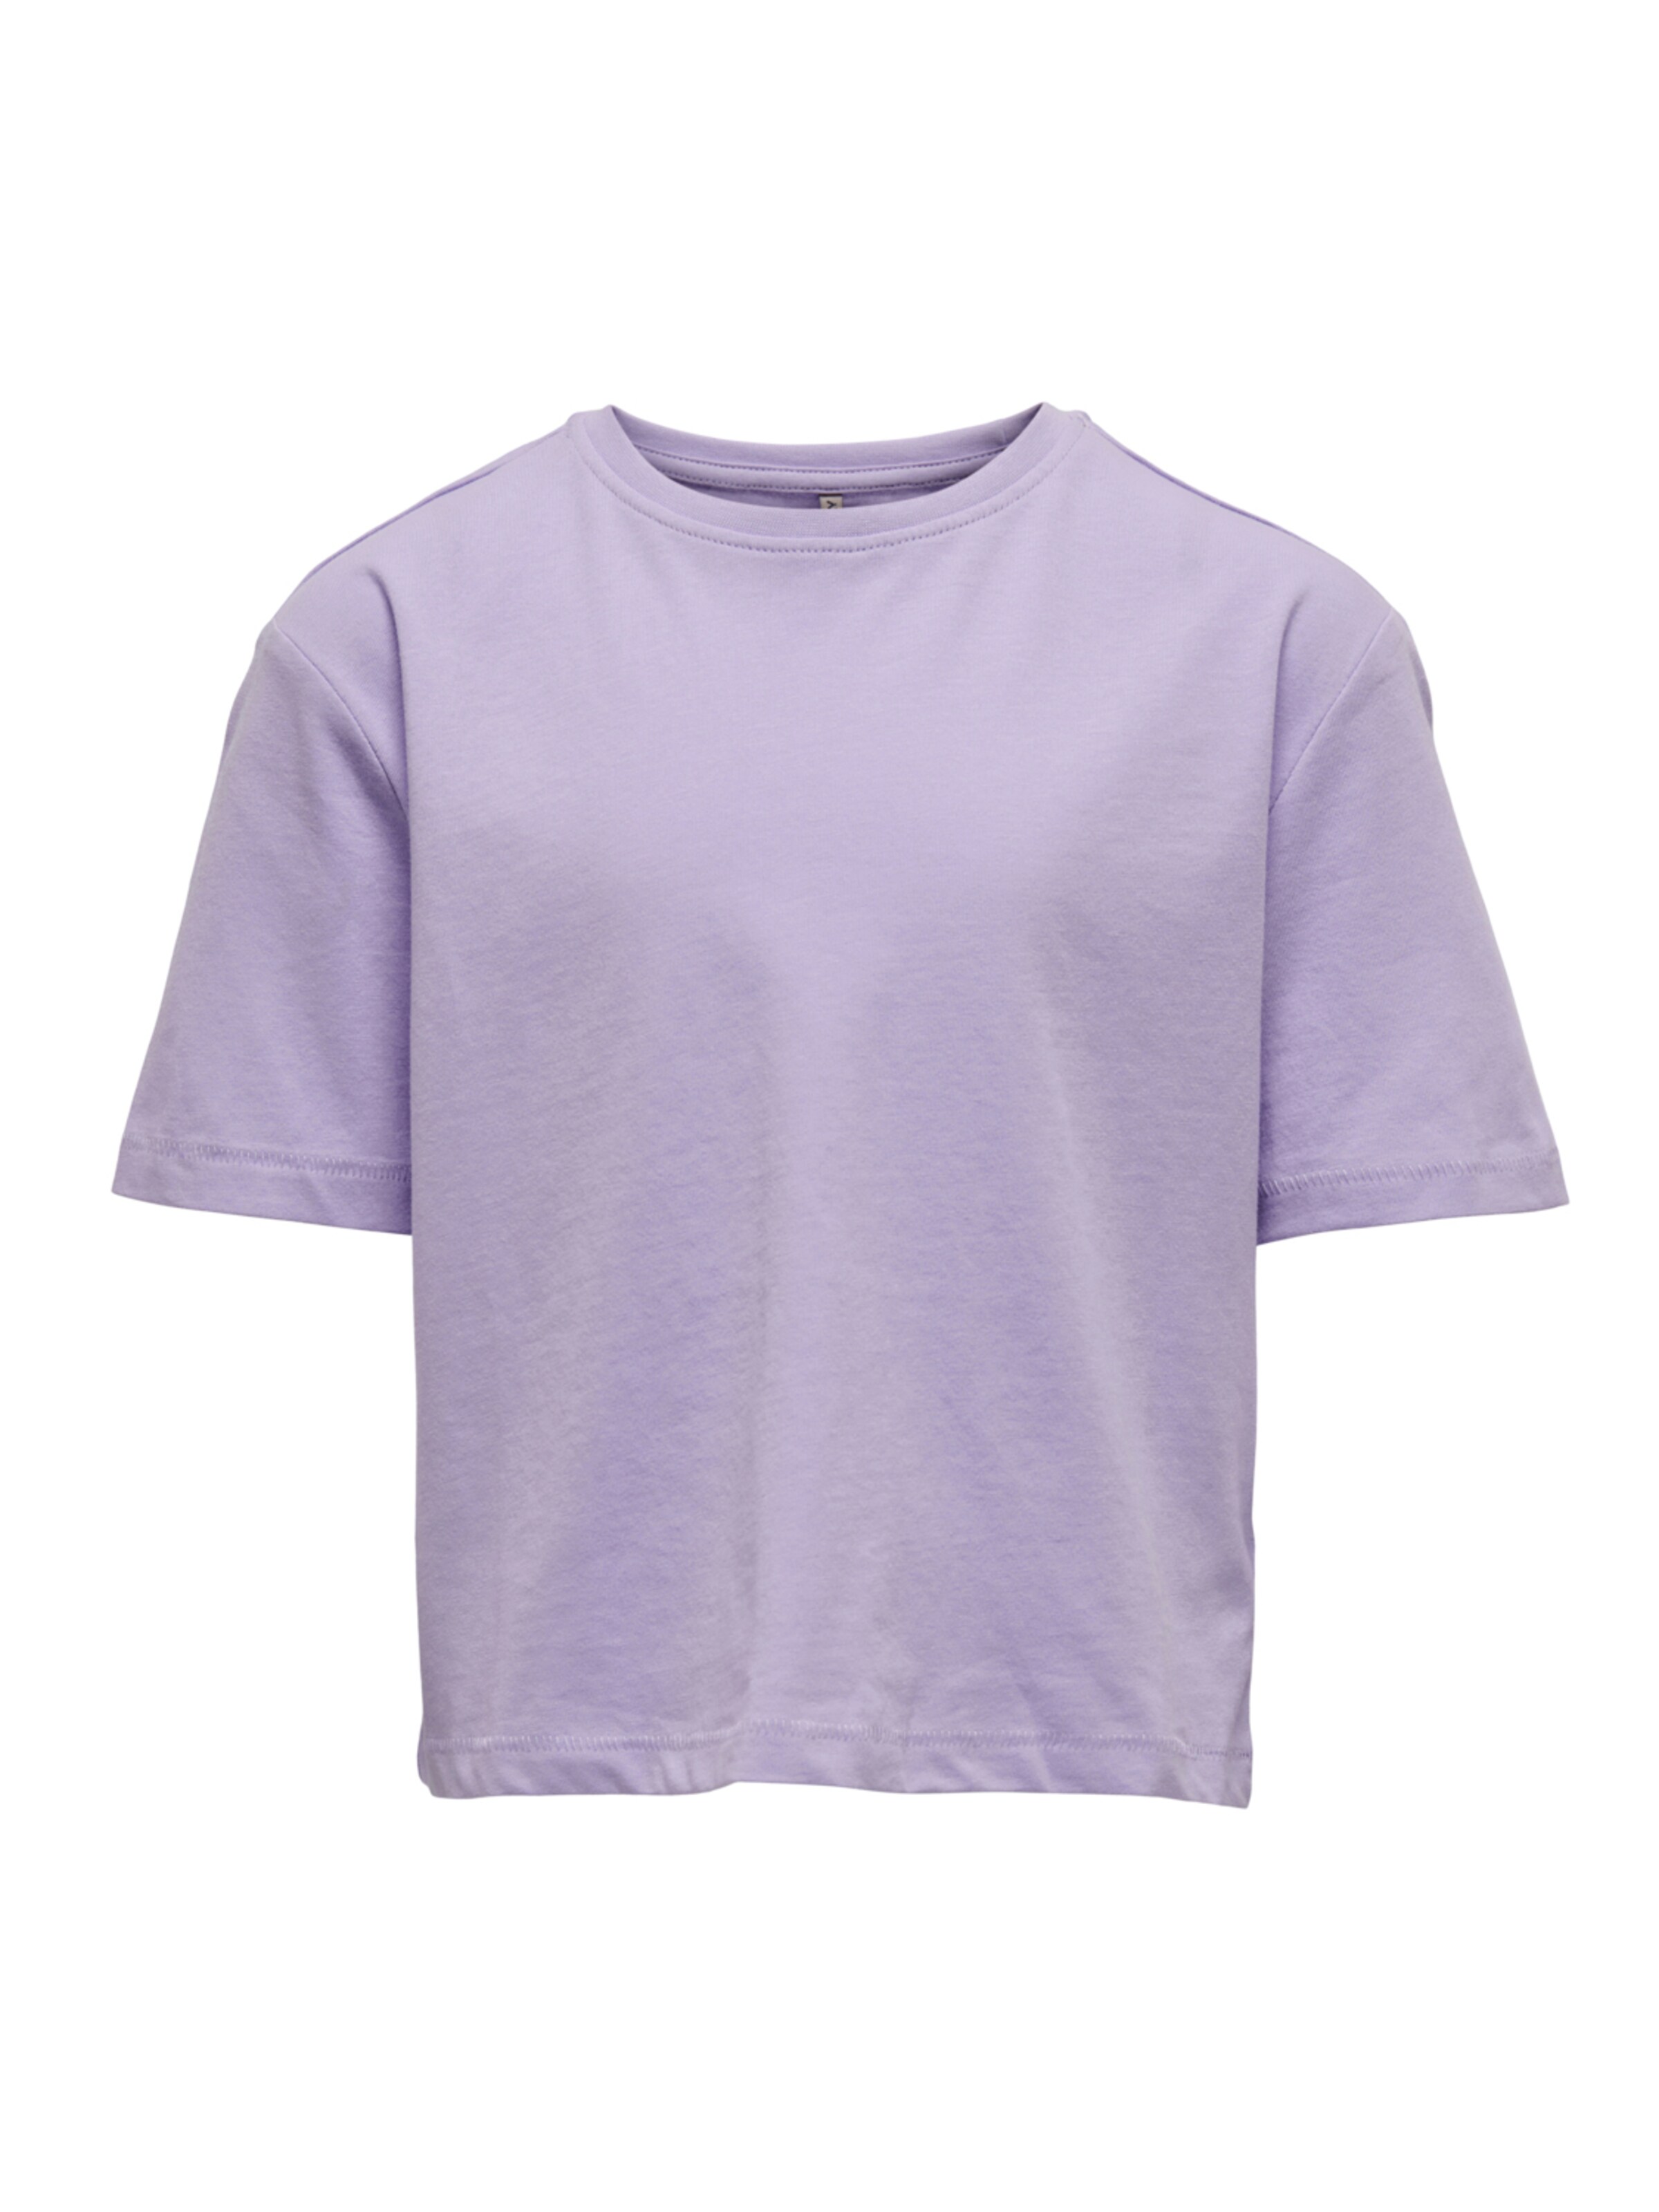 Kids Only T-Shirt 146-152 Violet